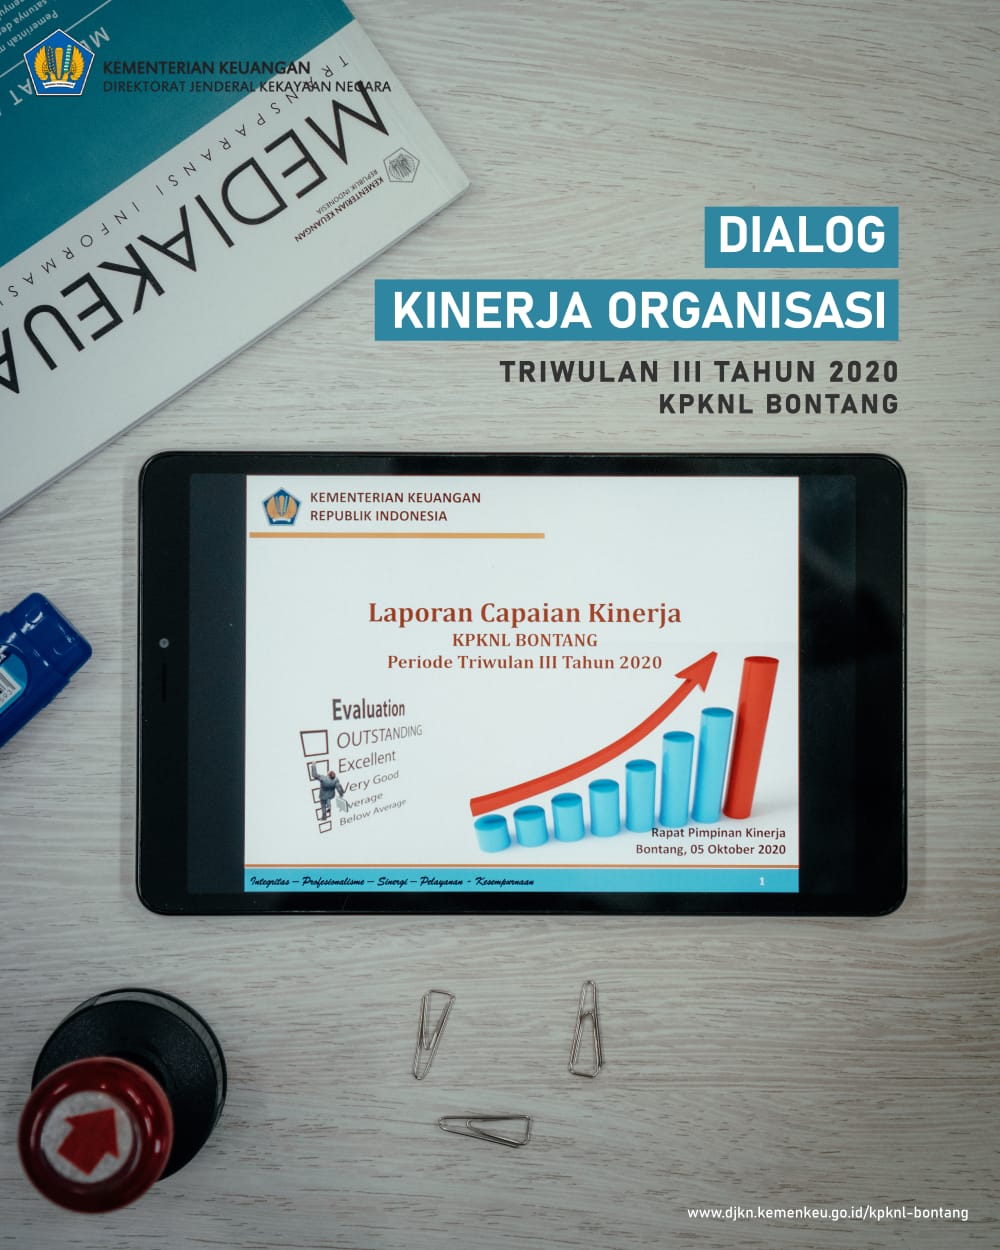 Dialog Kinerja Organisasi (DKO) Triwulan III 2020 KPKNL Bontang, Fokus Menuntaskan Target di 2020